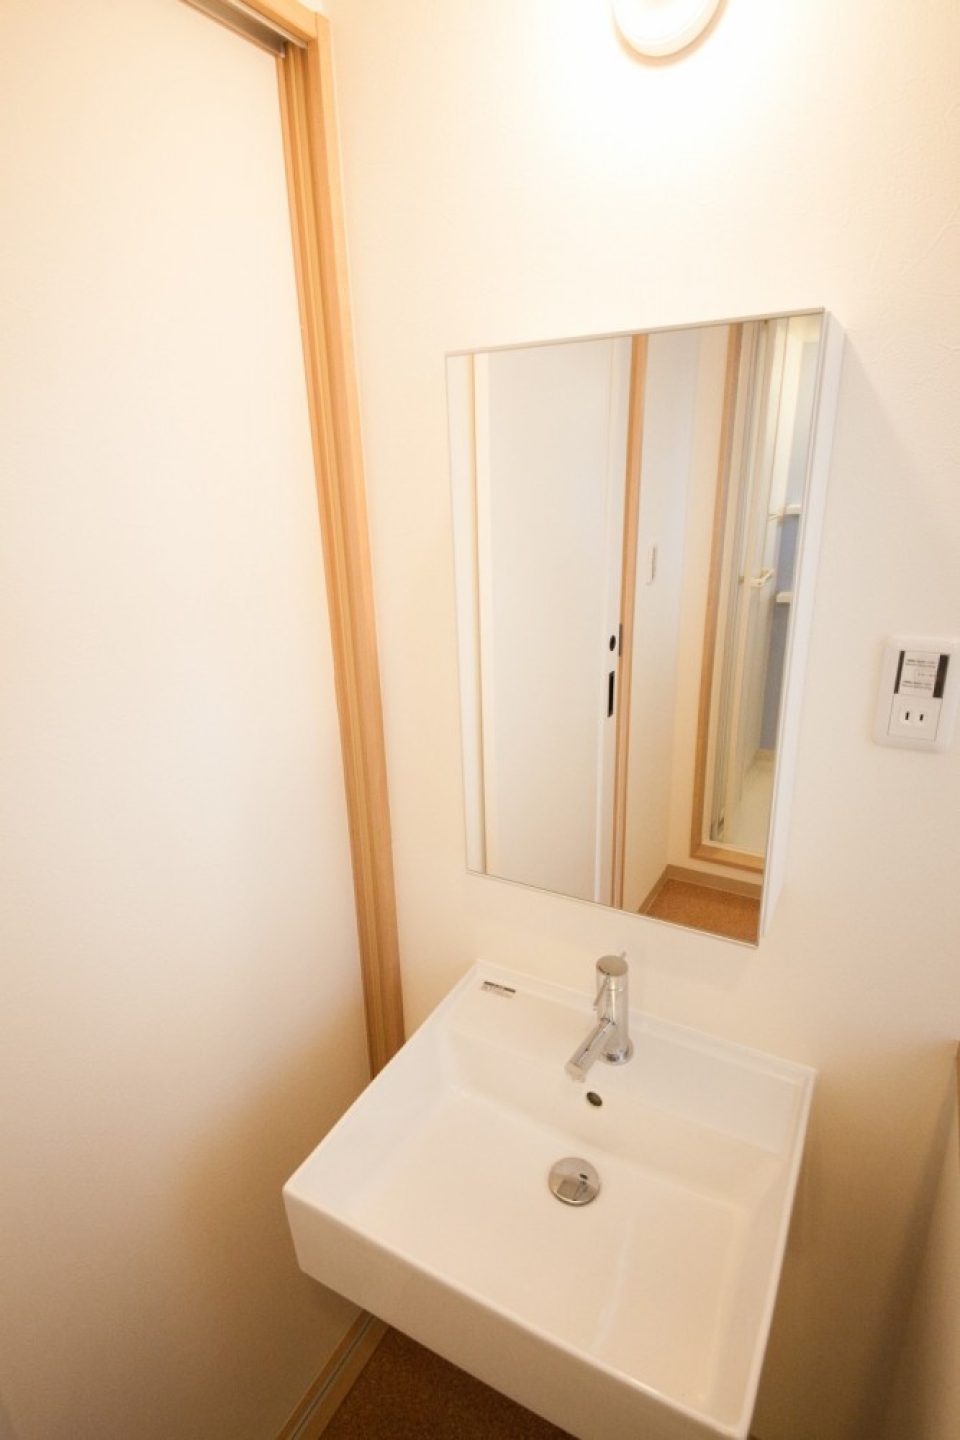 正方形のおしゃれな洗面台。鏡の裏は収納棚に。※写真は302号室